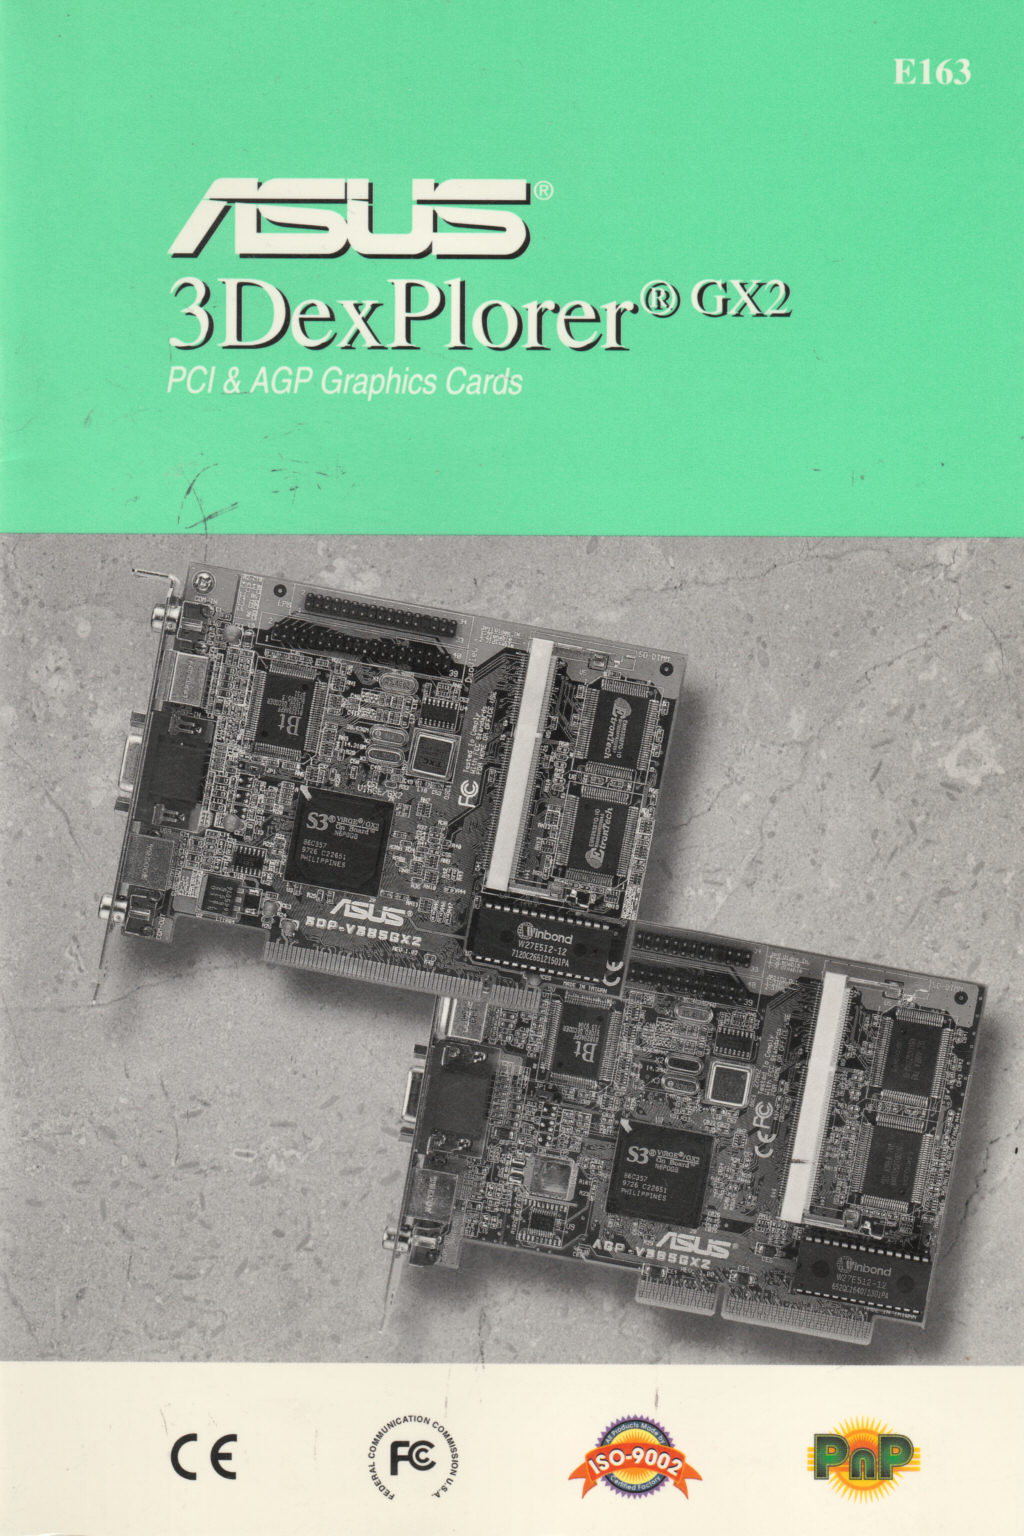 ASUS 3DexPlorer GX2